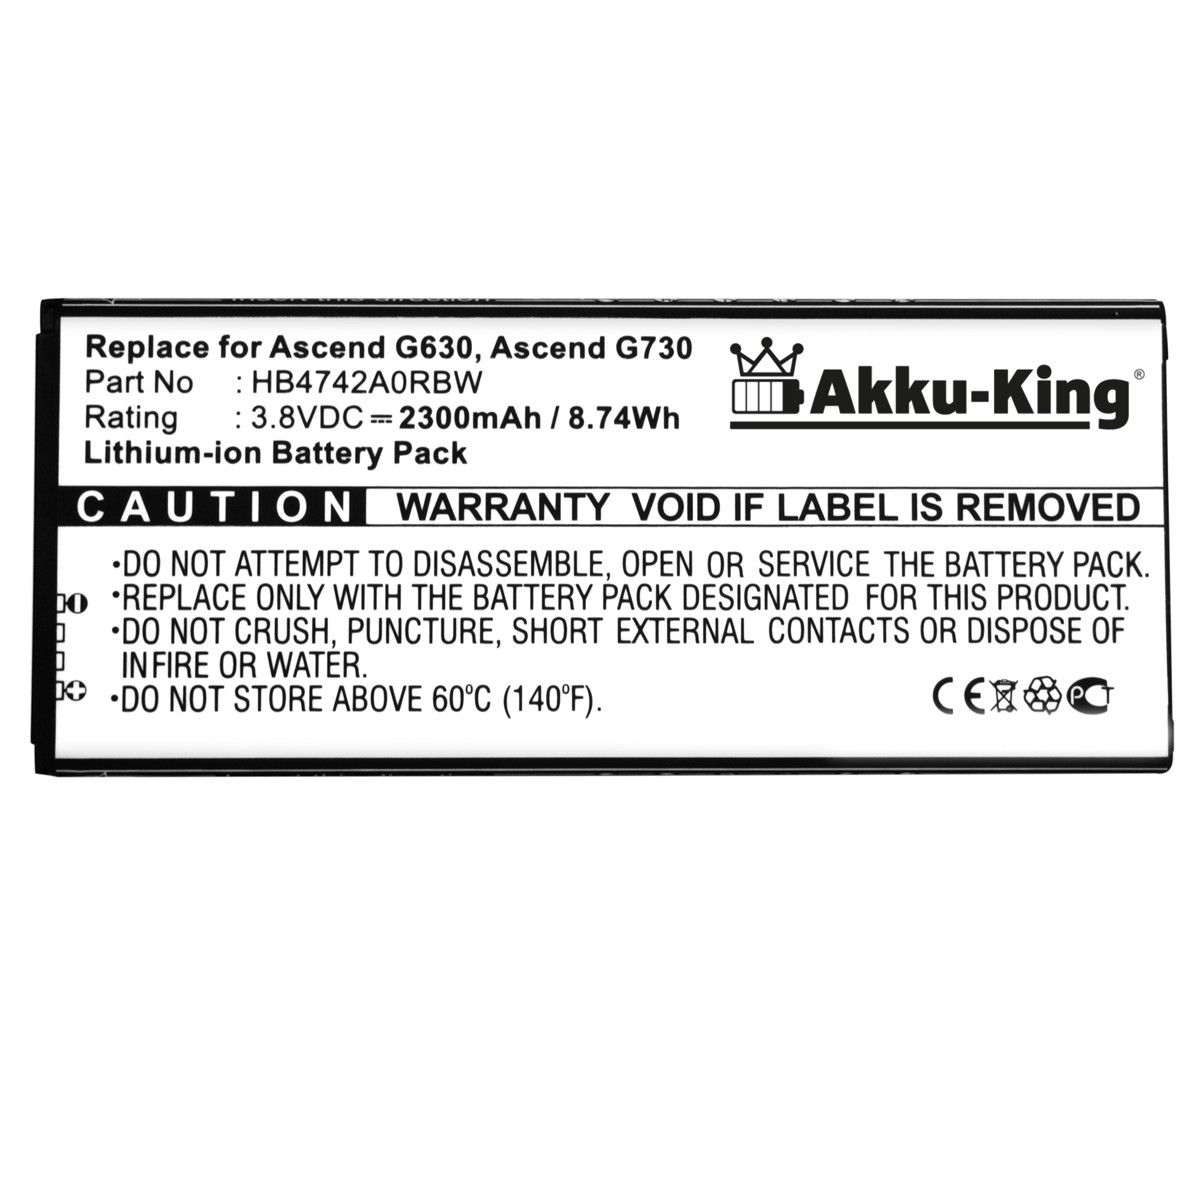 Huawei Handy-Akku, Li-Ion HB4742A0RBC 3.8 AKKU-KING Akku kompatibel mit Volt, 2300mAh